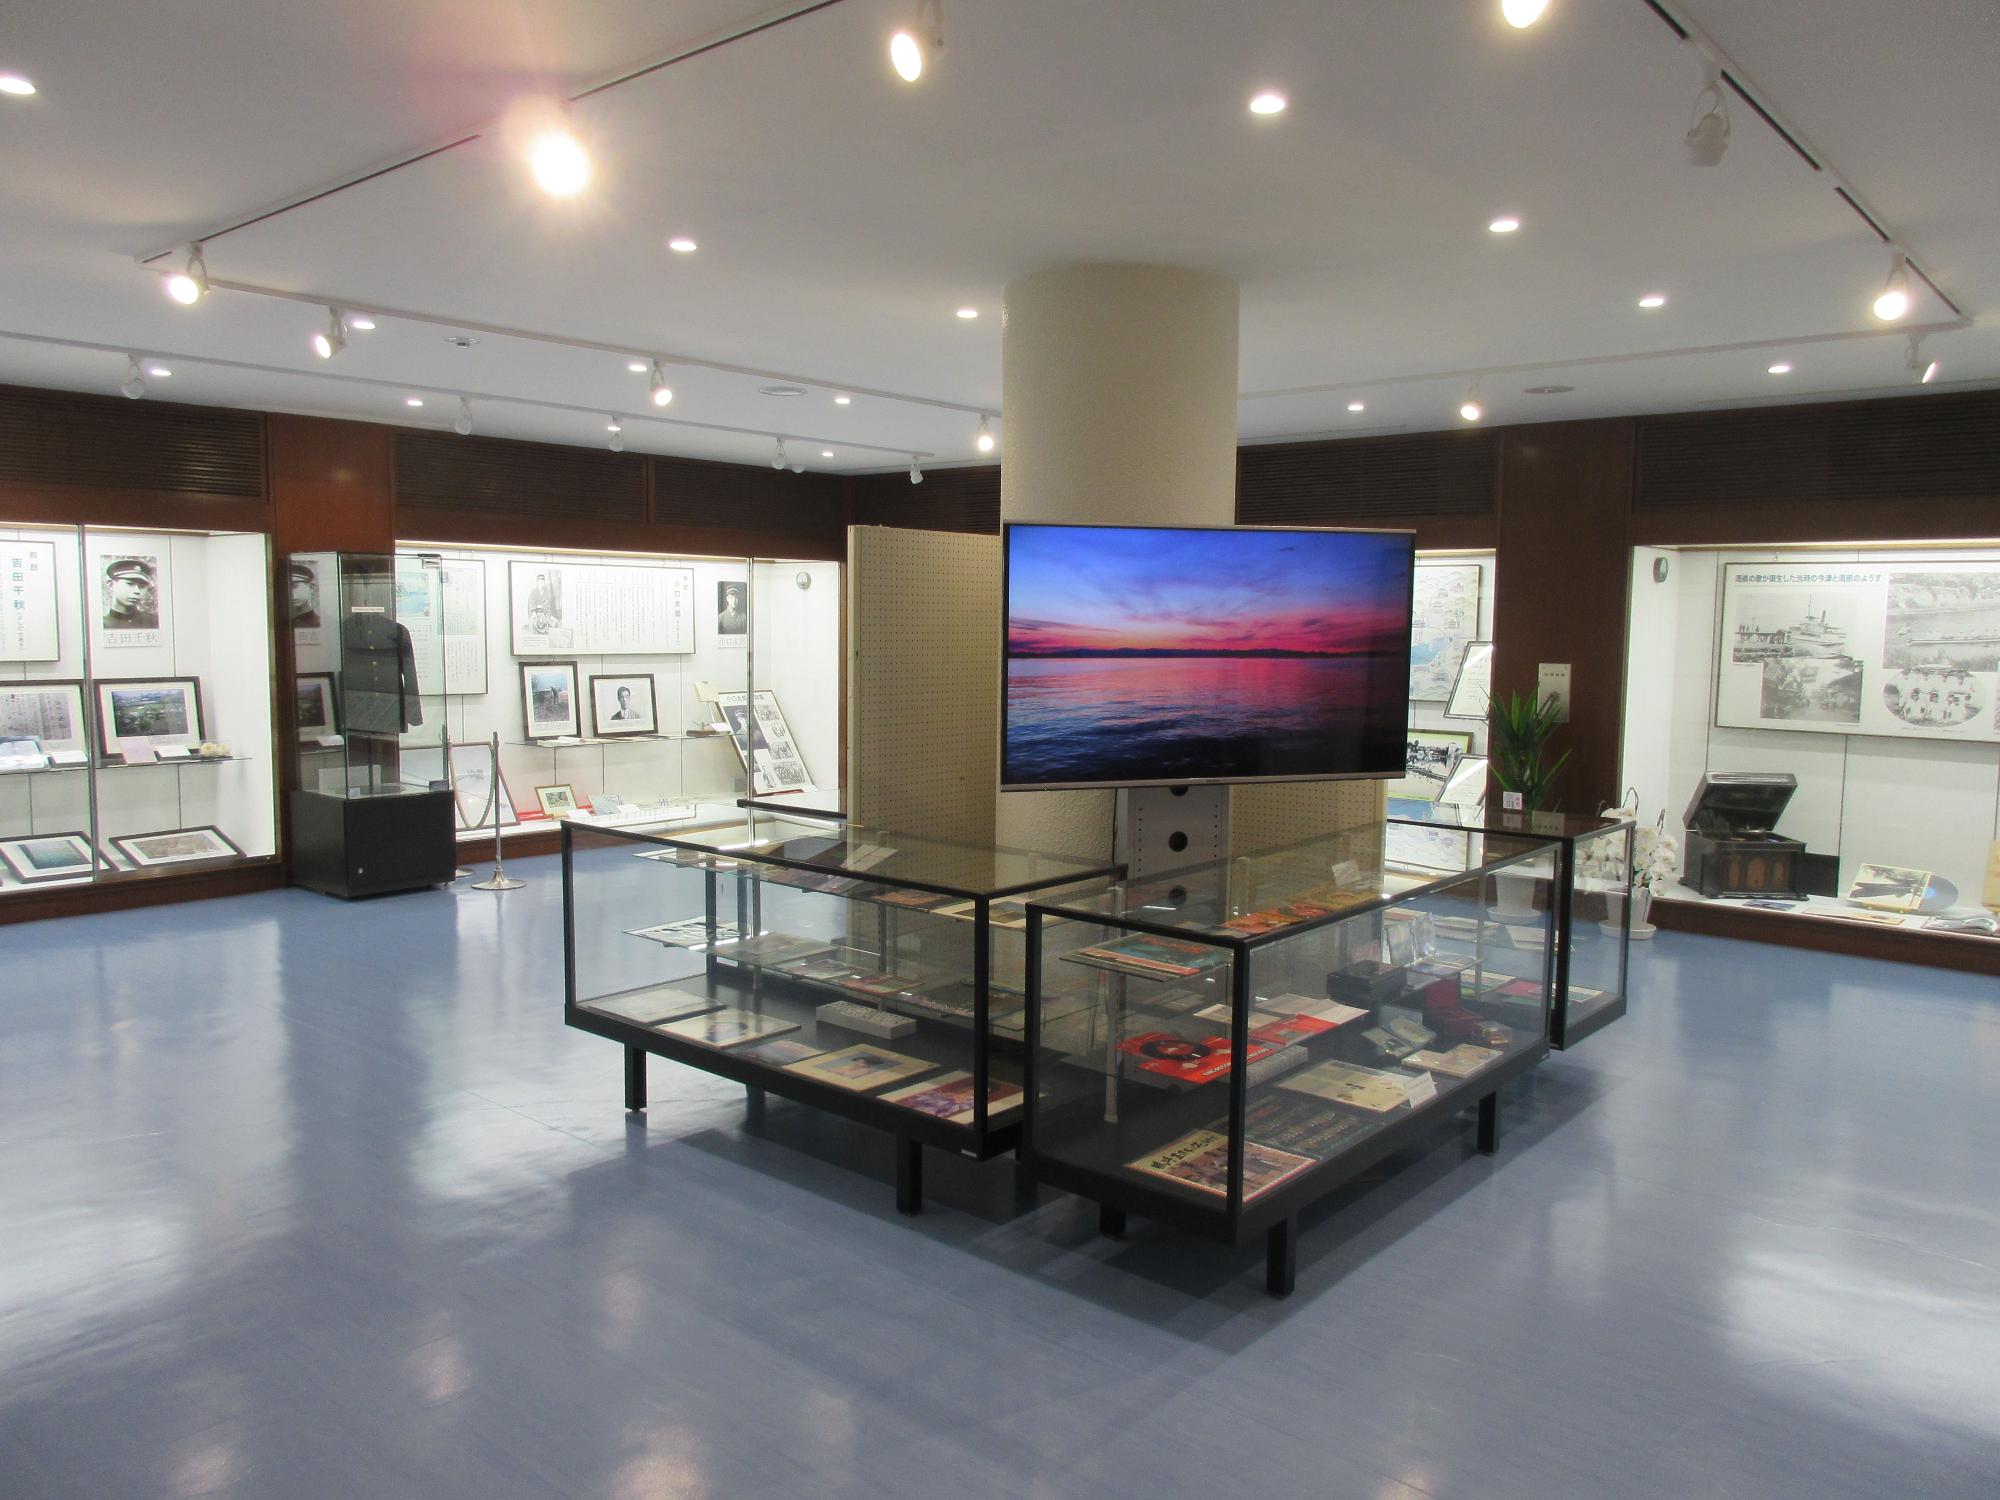 中央にスクリーンがありガラスケースに展示品が展示された展示ホールの写真